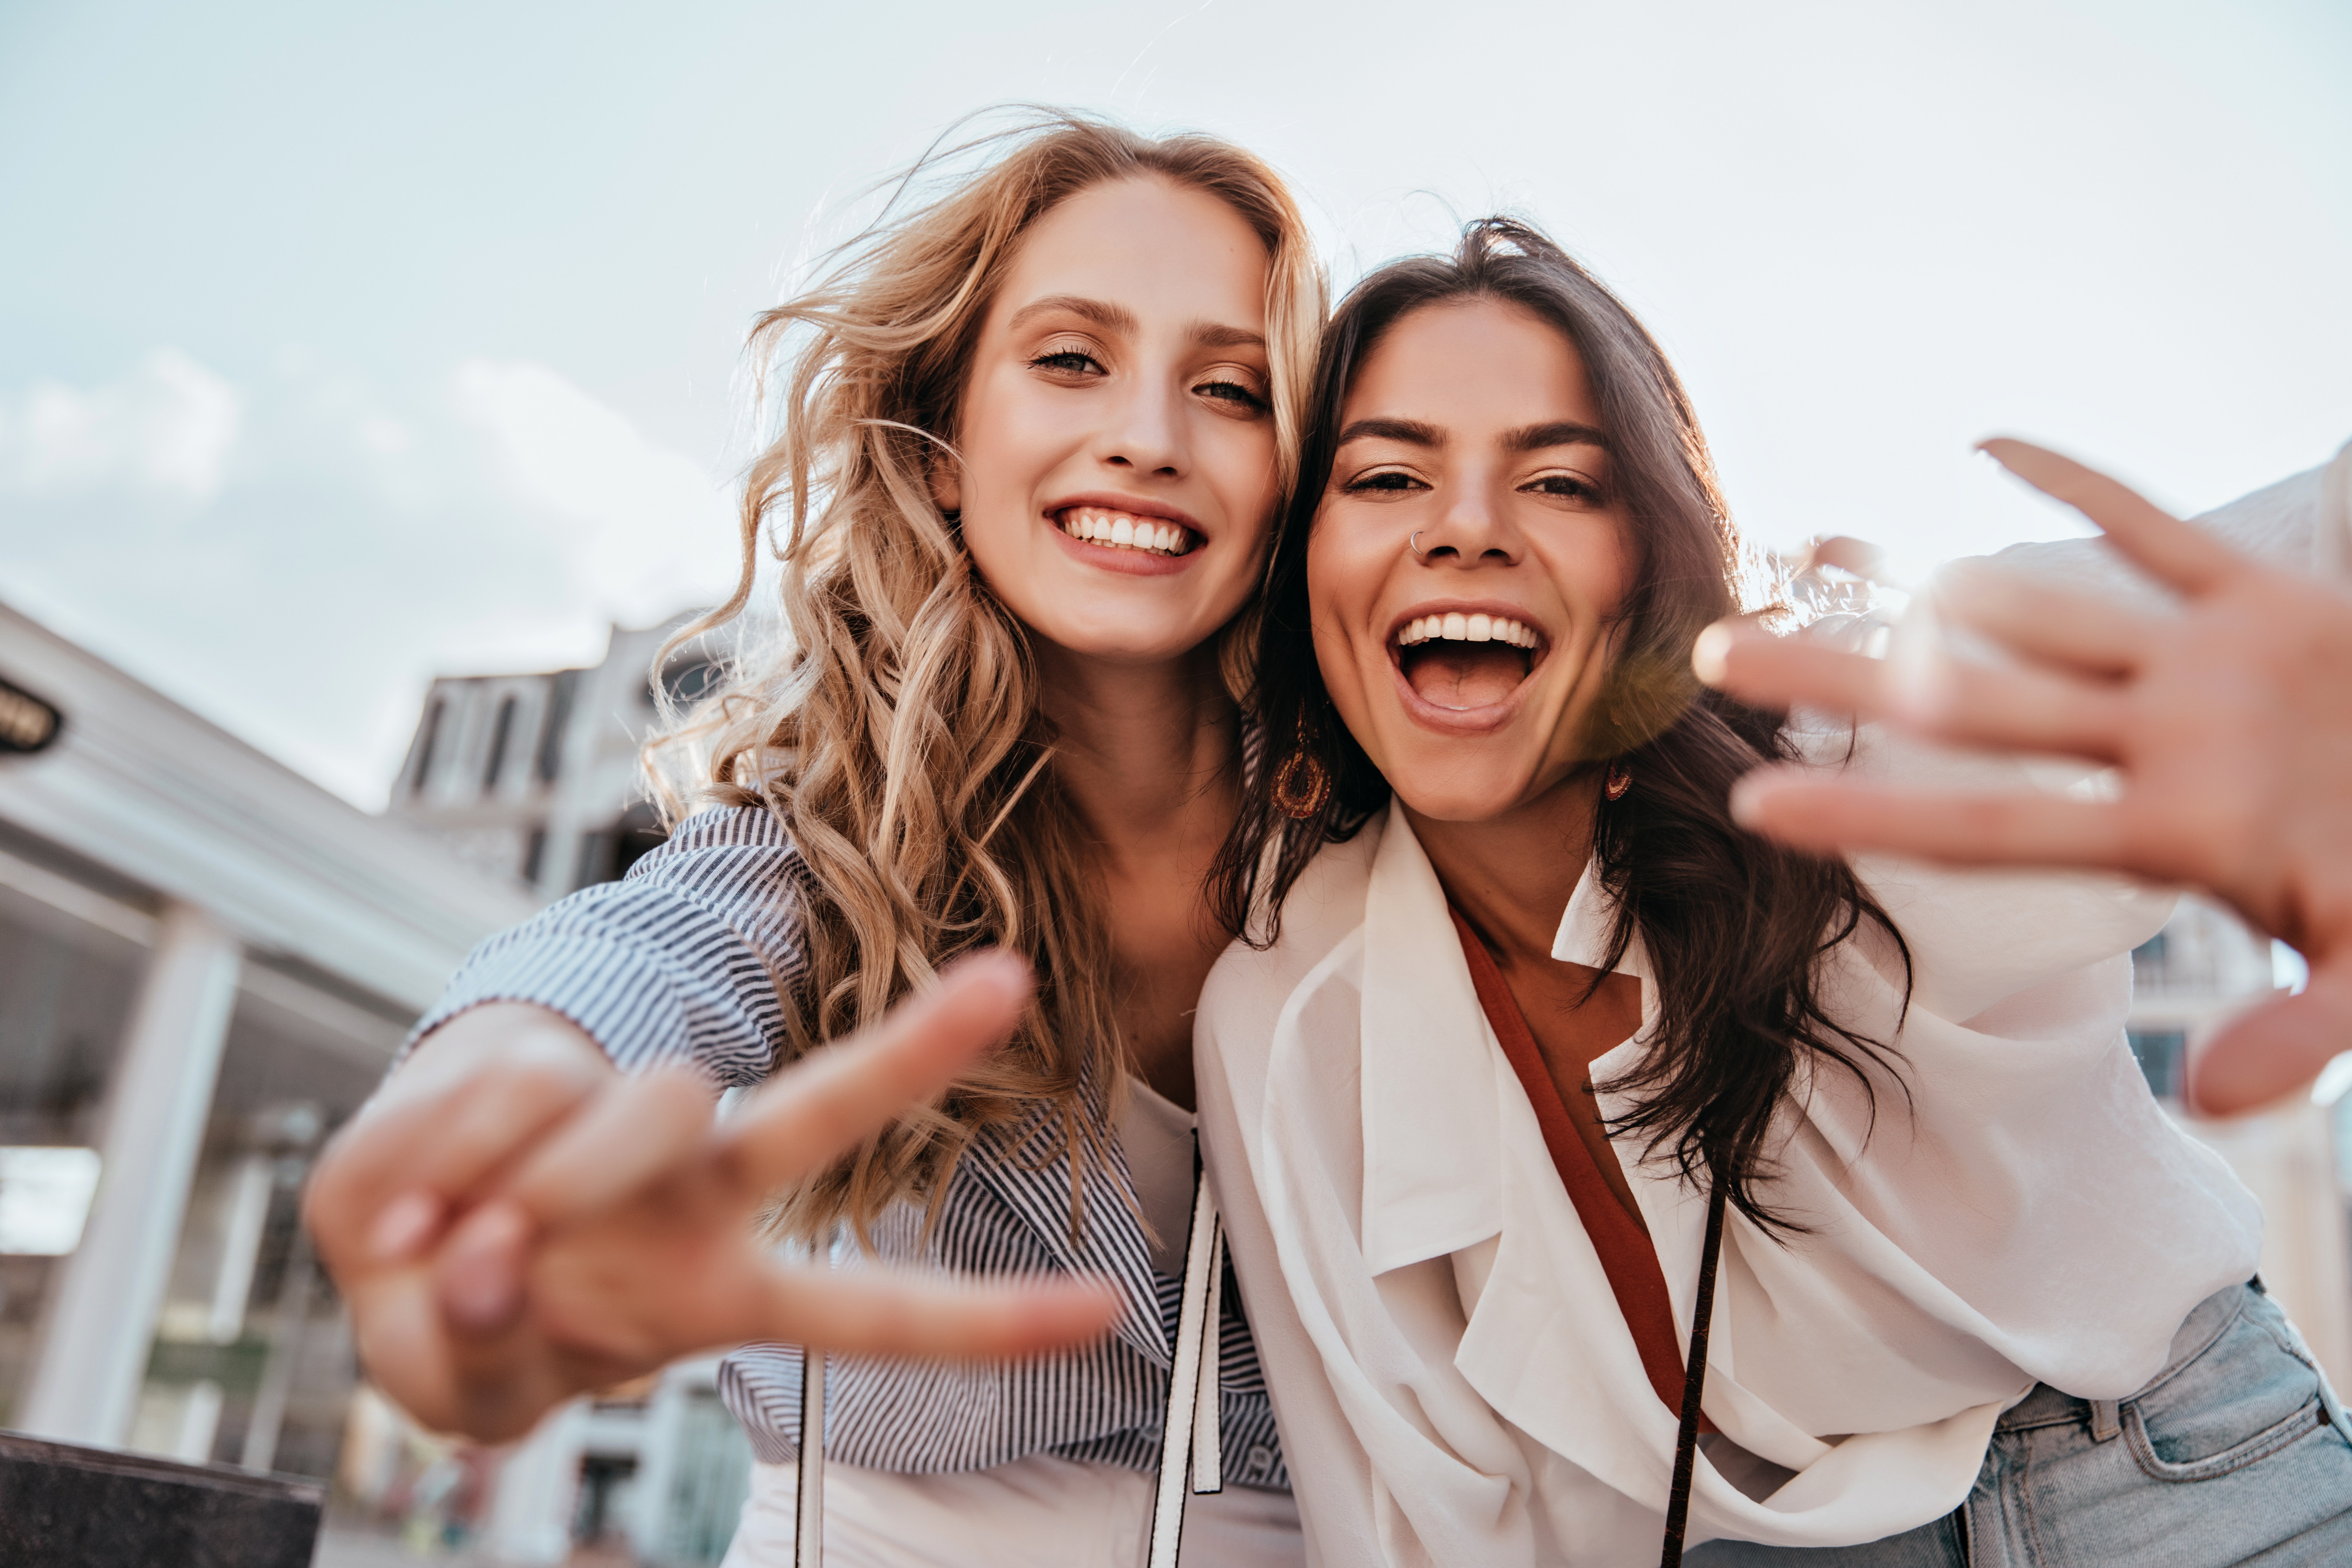 Two women laughing | Source: Shutterstock